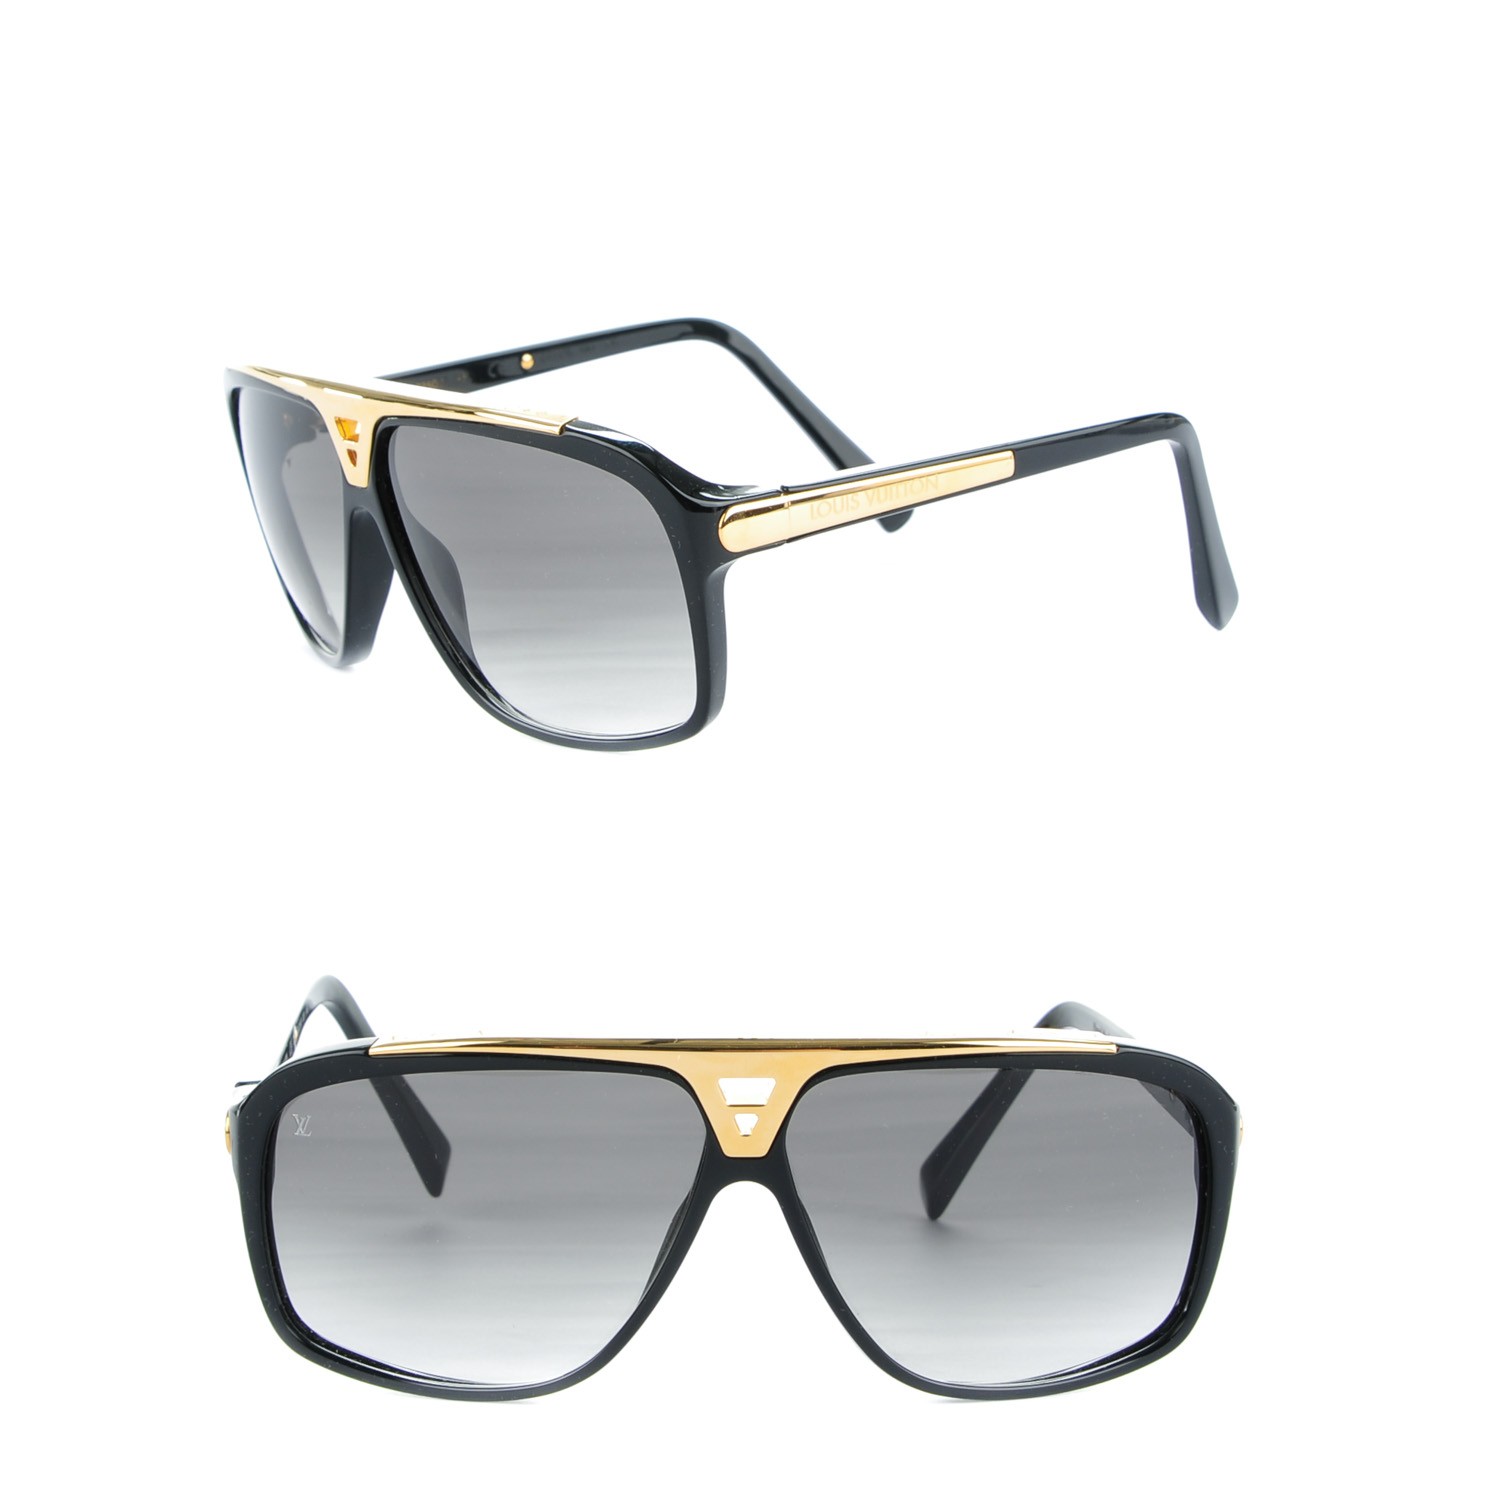 Louis Vuitton Black and Gold Evidence Men Sunglasses Louis Vuitton